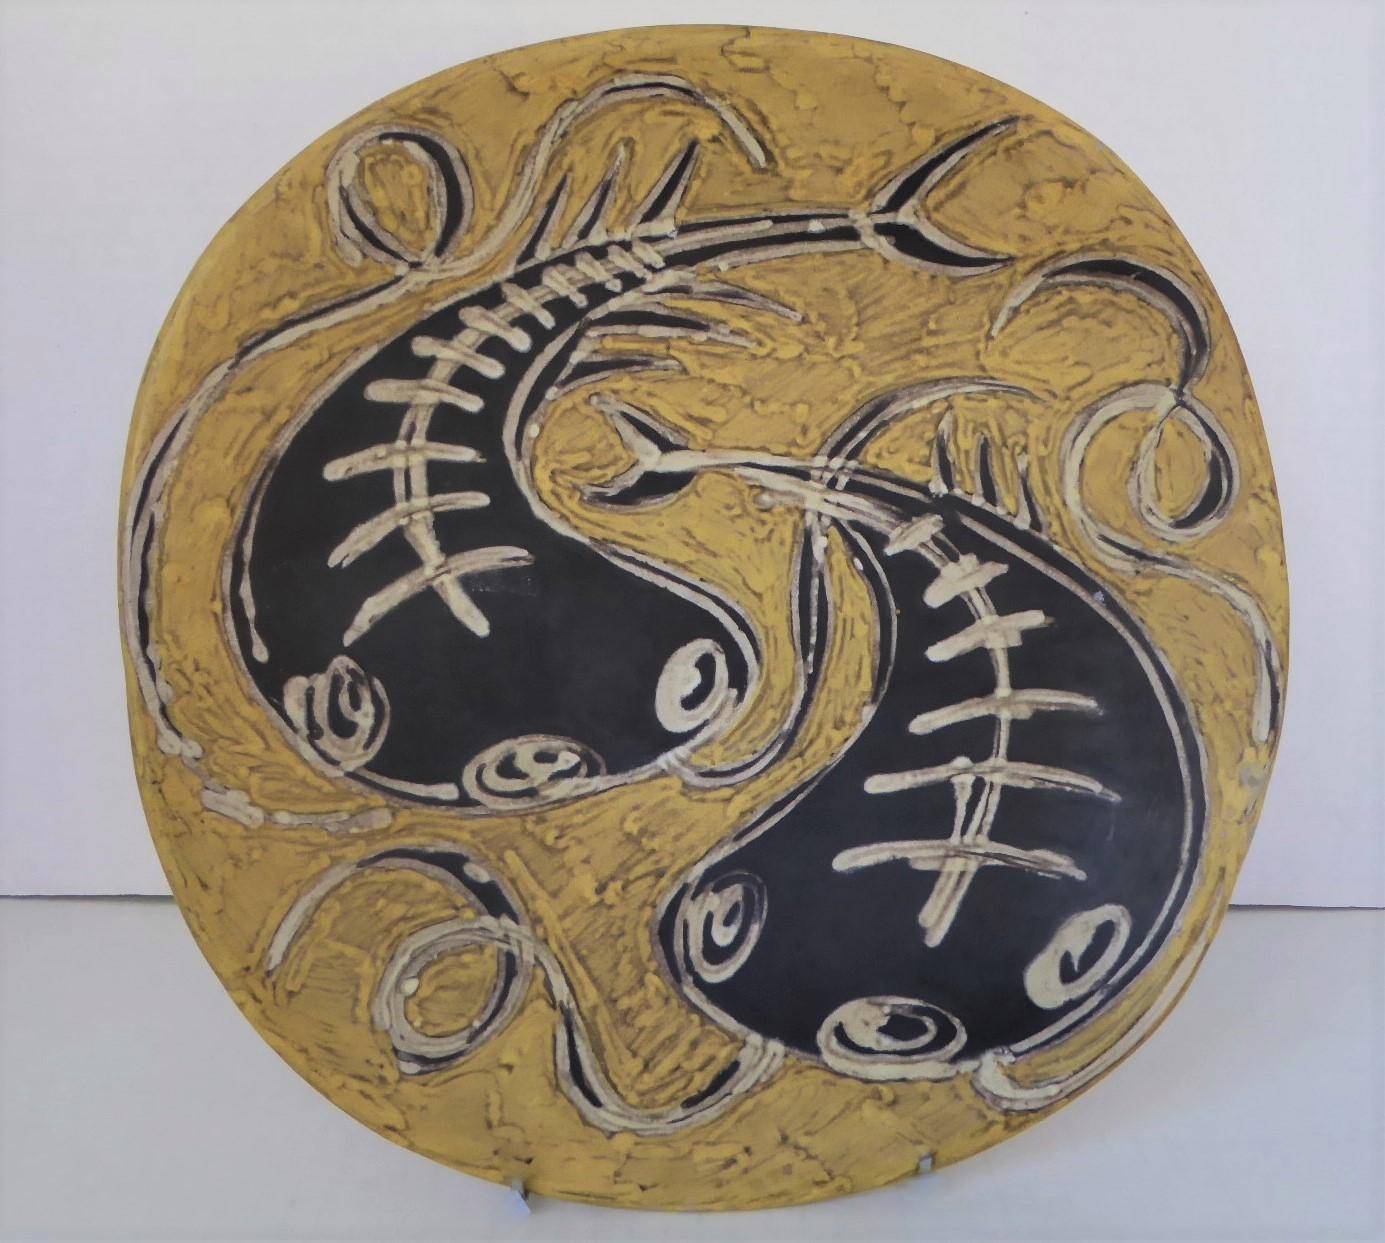 Assiette décorative moderne du milieu du siècle de l'artiste hongrois Gorka Livia (1925-2011). Cette assiette, comme toutes ses céramiques, est moulée à la main et présente une forme libre en raison de la forme irrégulière du récipient, qui est